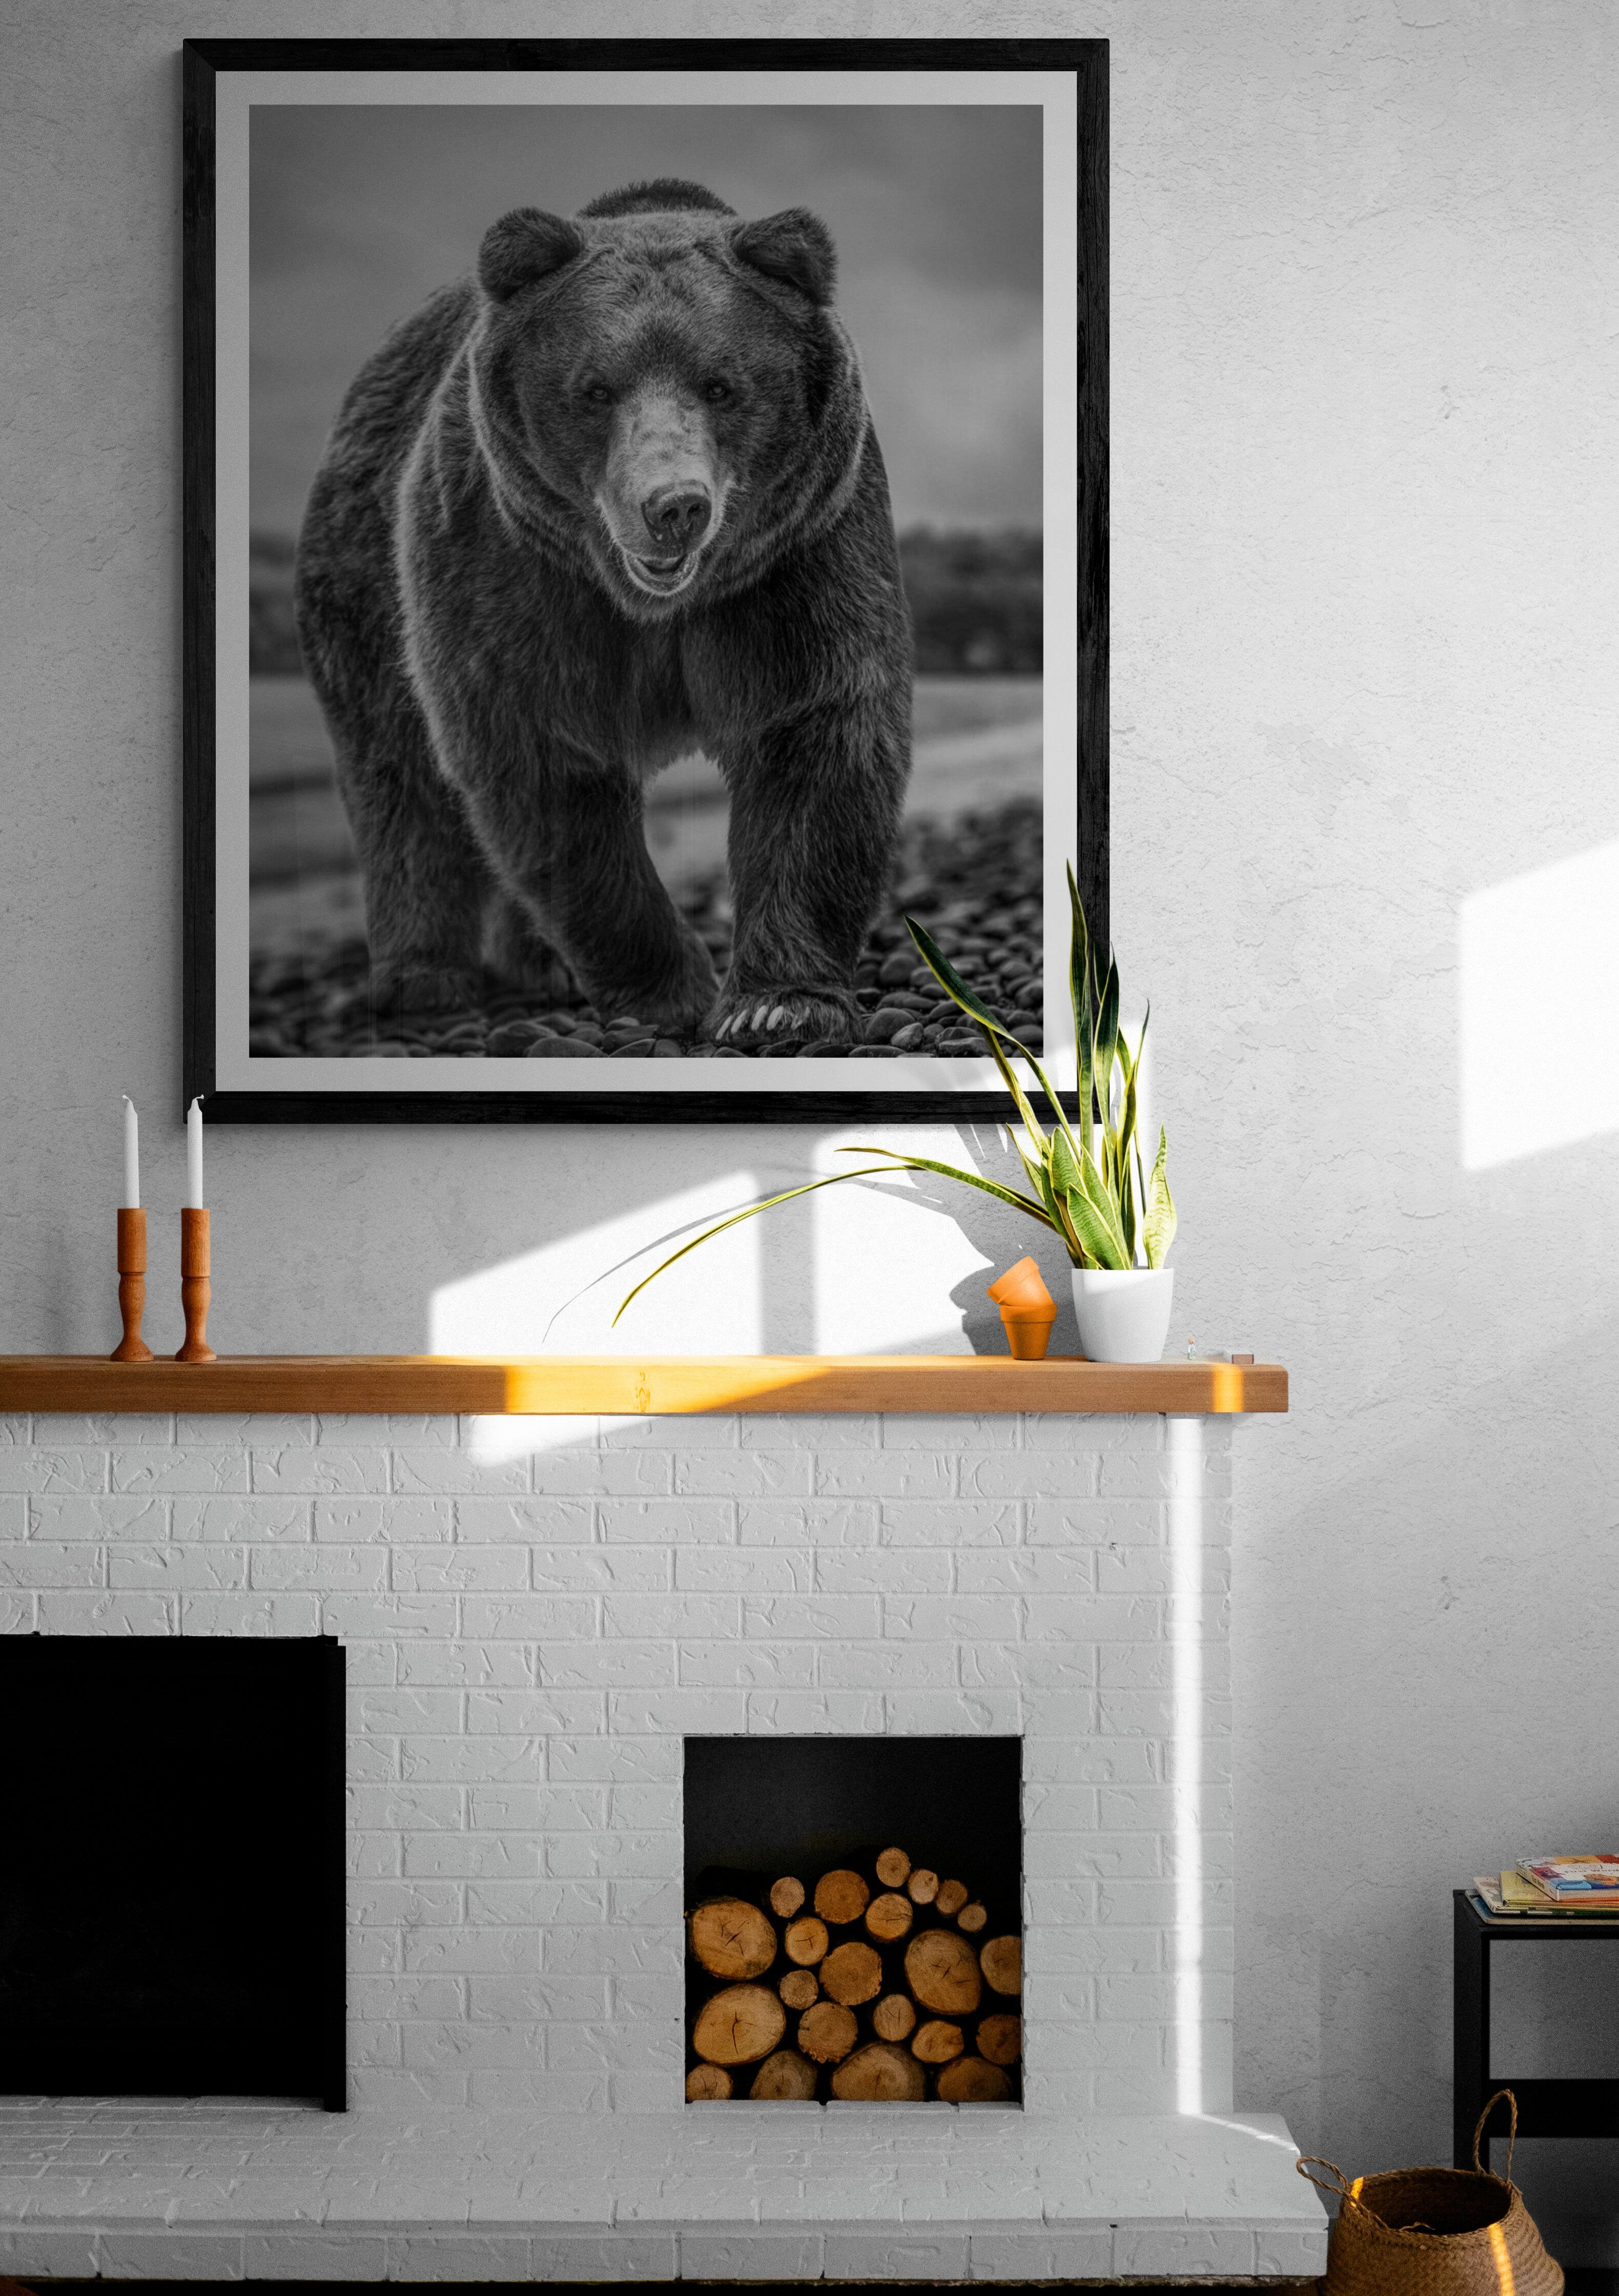 Il s'agit d'une photographie contemporaine d'un ours brun.  
Ceci a été tourné sur l'île de Kodiak en 2019. 
36x48 Non signé
Papier pigmentaire d'archivage 
Encres d'archivage
Encadrement disponible. Renseignez-vous sur les tarifs. 


Shane Russeck